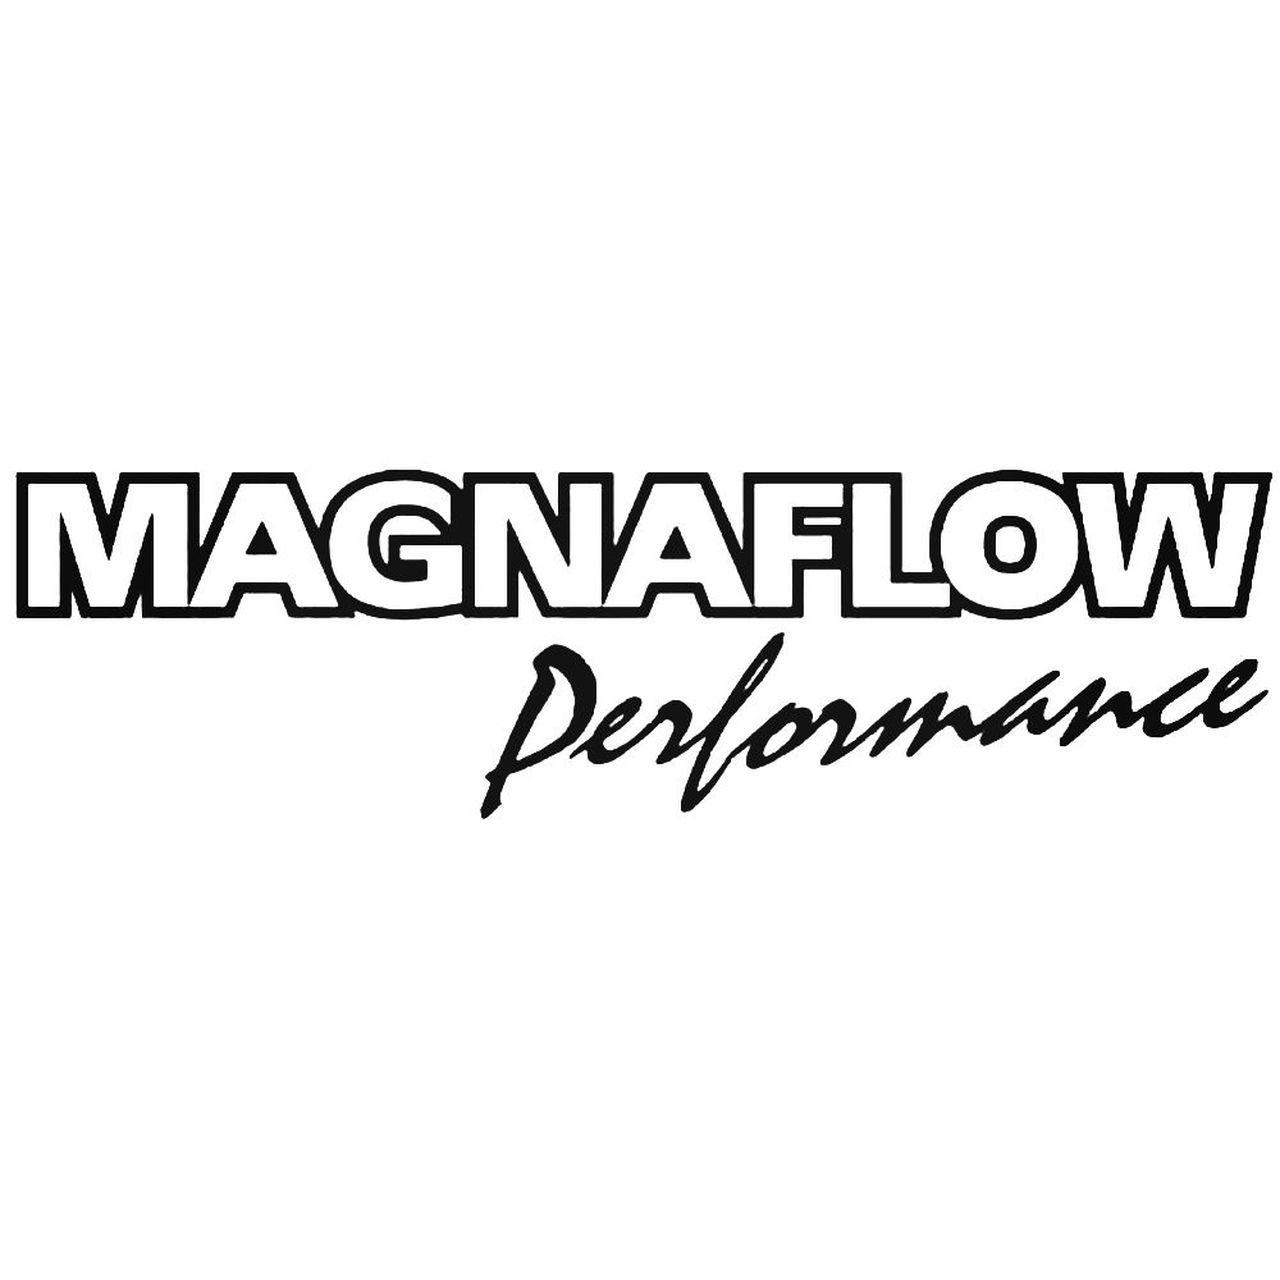 Magnaflow Logo - Magnaflow Performance Decal Sticker